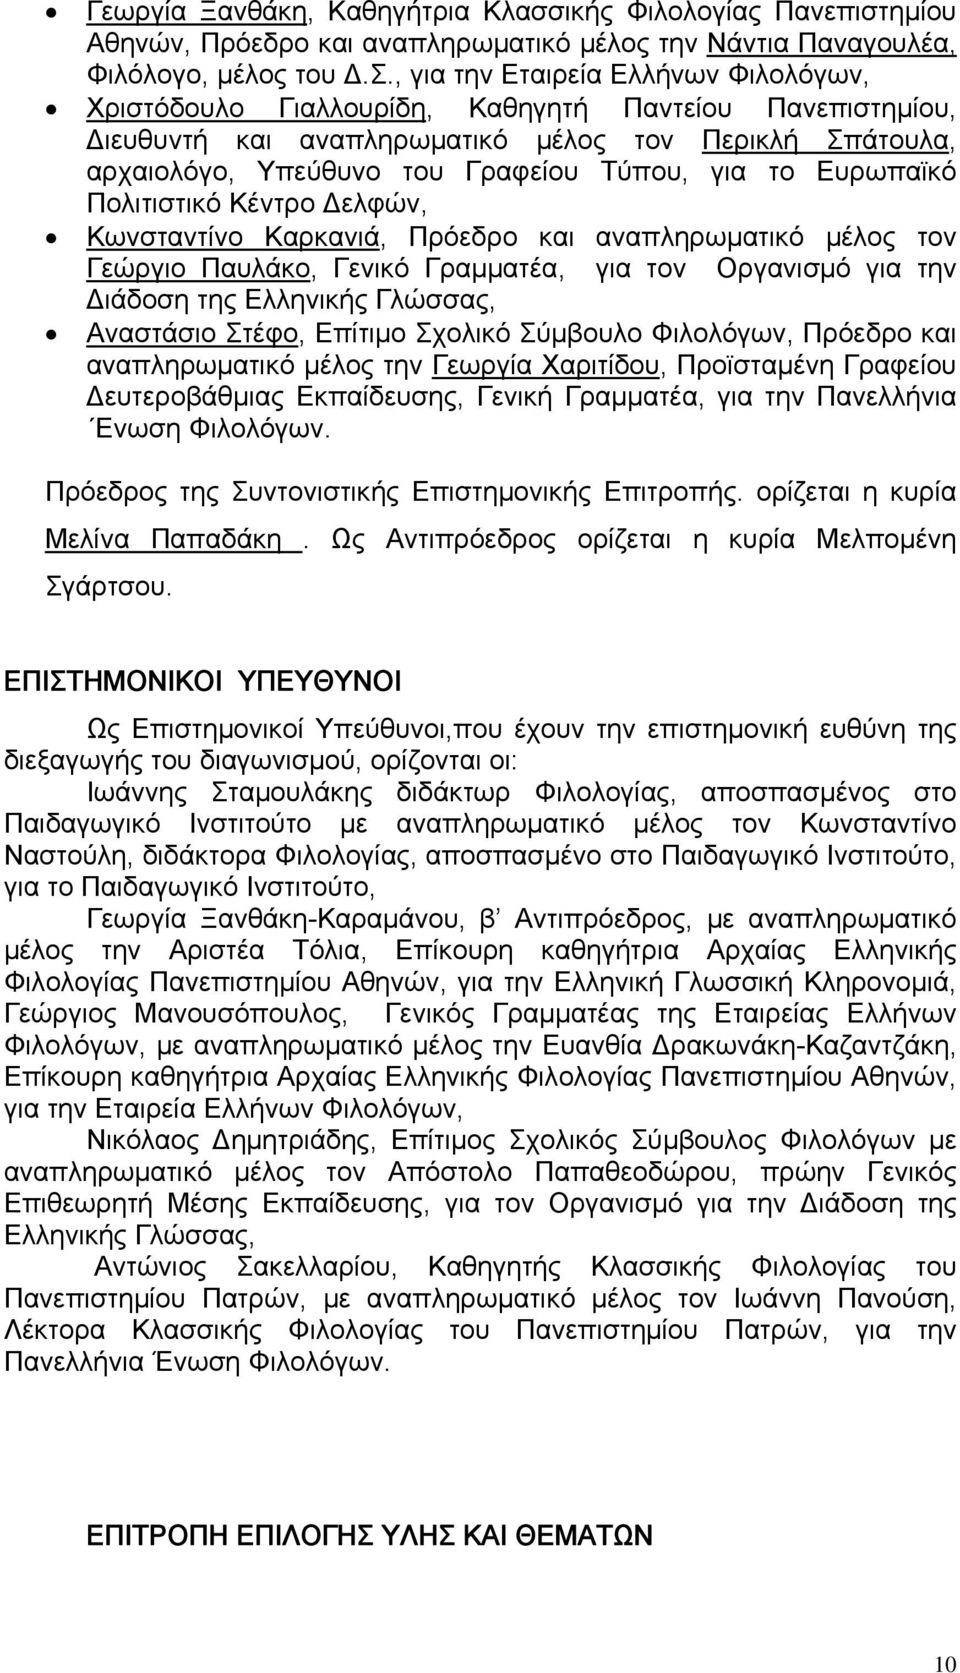 το Ευρωπαϊκό Πολιτιστικό Κέντρο Δελφών, Κωνσταντίνο Καρκανιά, Πρόεδρο και αναπληρωματικό μέλος τον Γεώργιο Παυλάκο, Γενικό Γραμματέα, για τον Οργανισμό για την Διάδοση της Ελληνικής Γλώσσας,